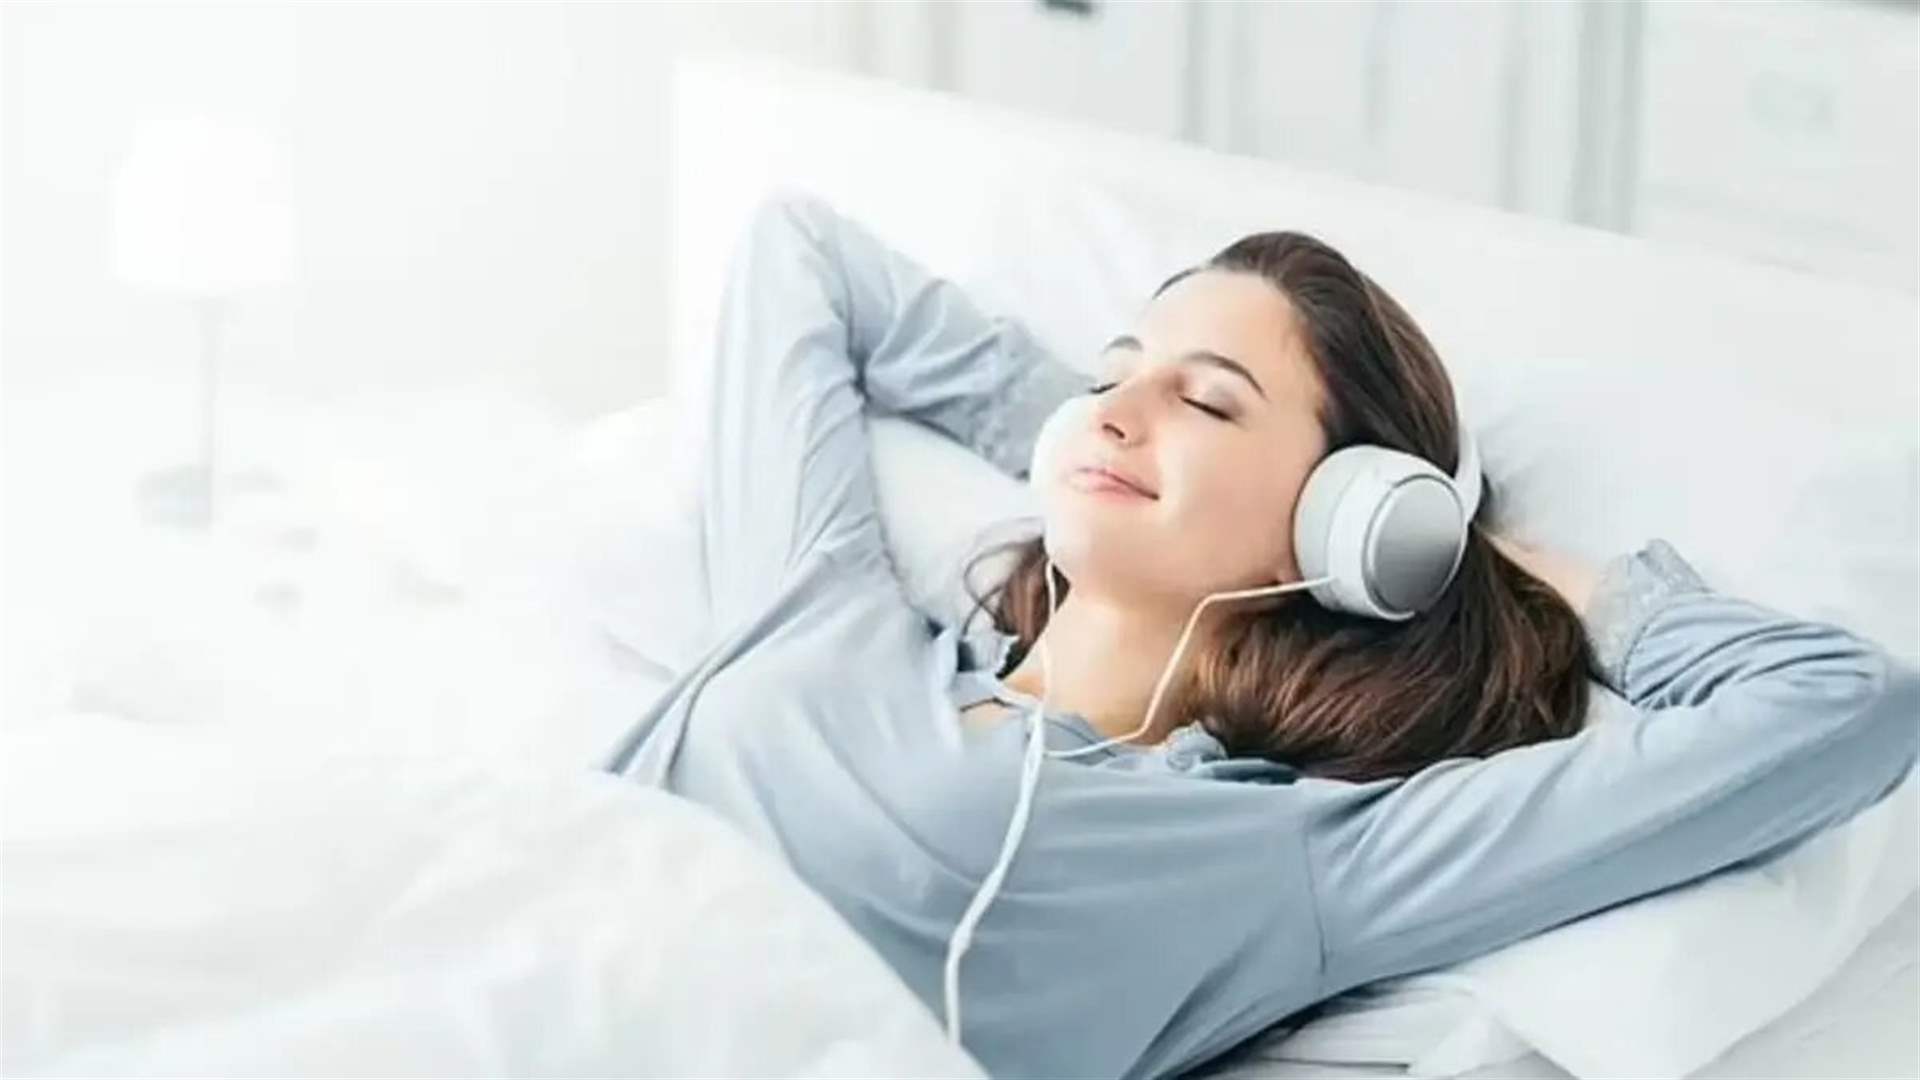 دراسة تكشف الموسيقى الأكثر استماعاً قبل النوم... ليست الكلاسيكية الهادئة!